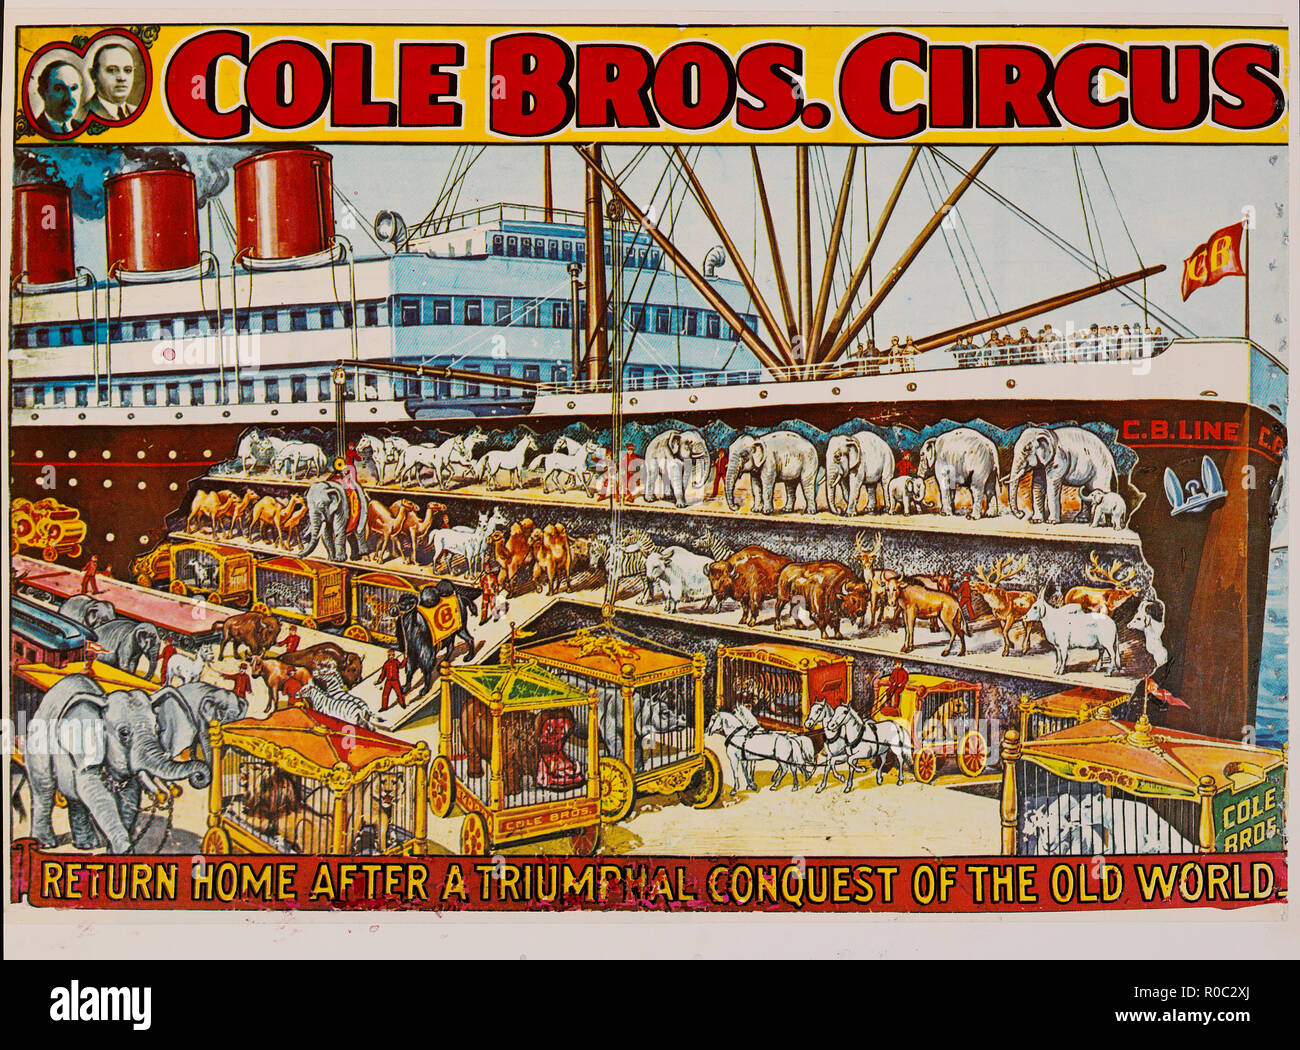 Cole Bros. Circus, regresar a casa después de una triunfante conquista del Viejo Mundo, el circo de póster, litografía, 1930 Foto de stock